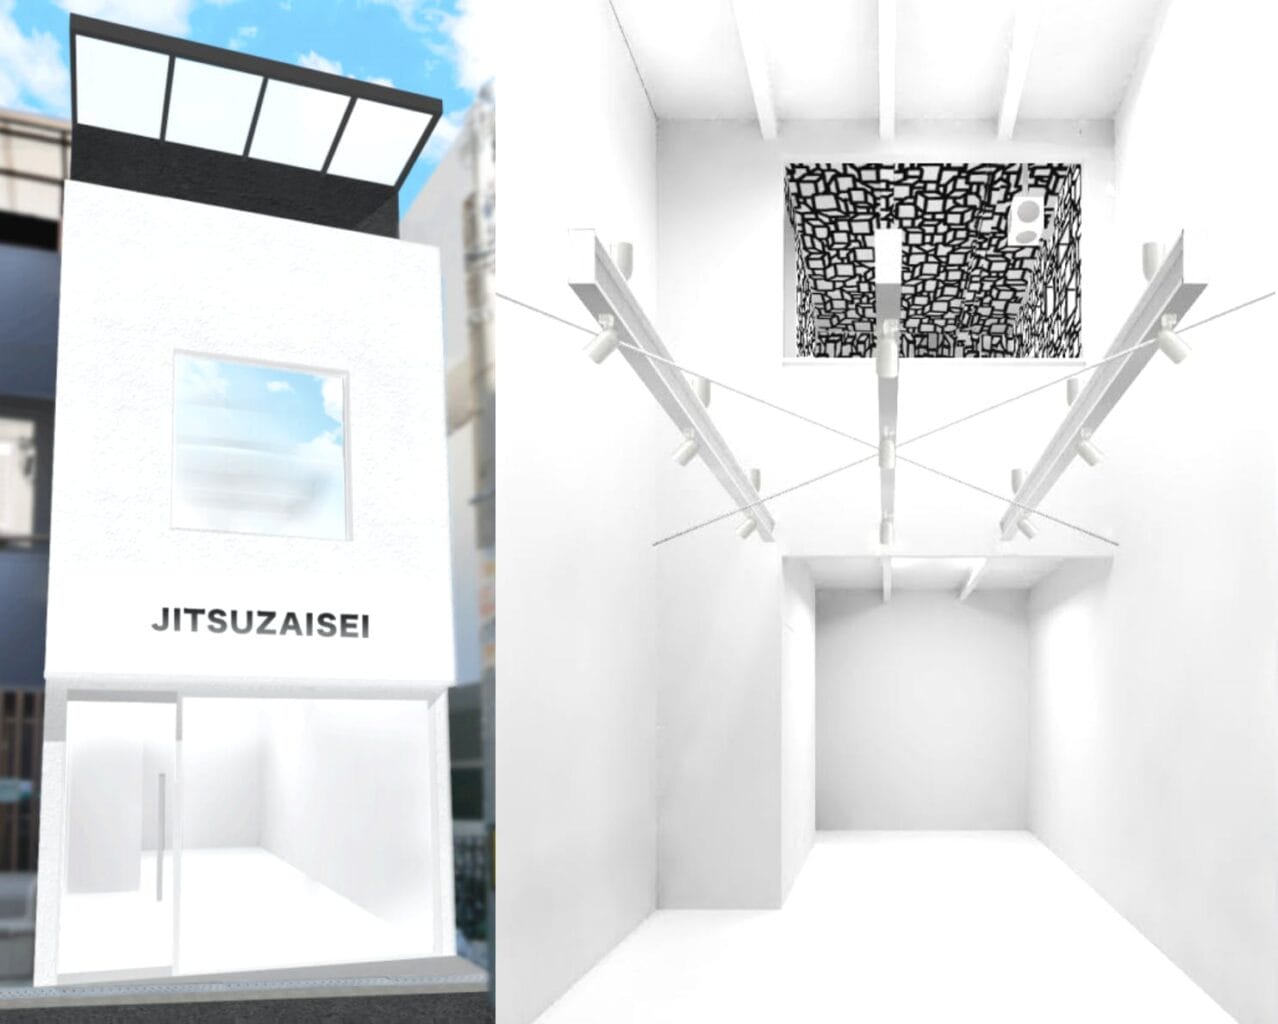 アーティスト・MINAMI MIYAJIMAが立ち上げる新スペース「JITSUZAISEI」、40名以上が参加するグループ展でスタート。クラウドファンディングの支援者のみに住所公開。